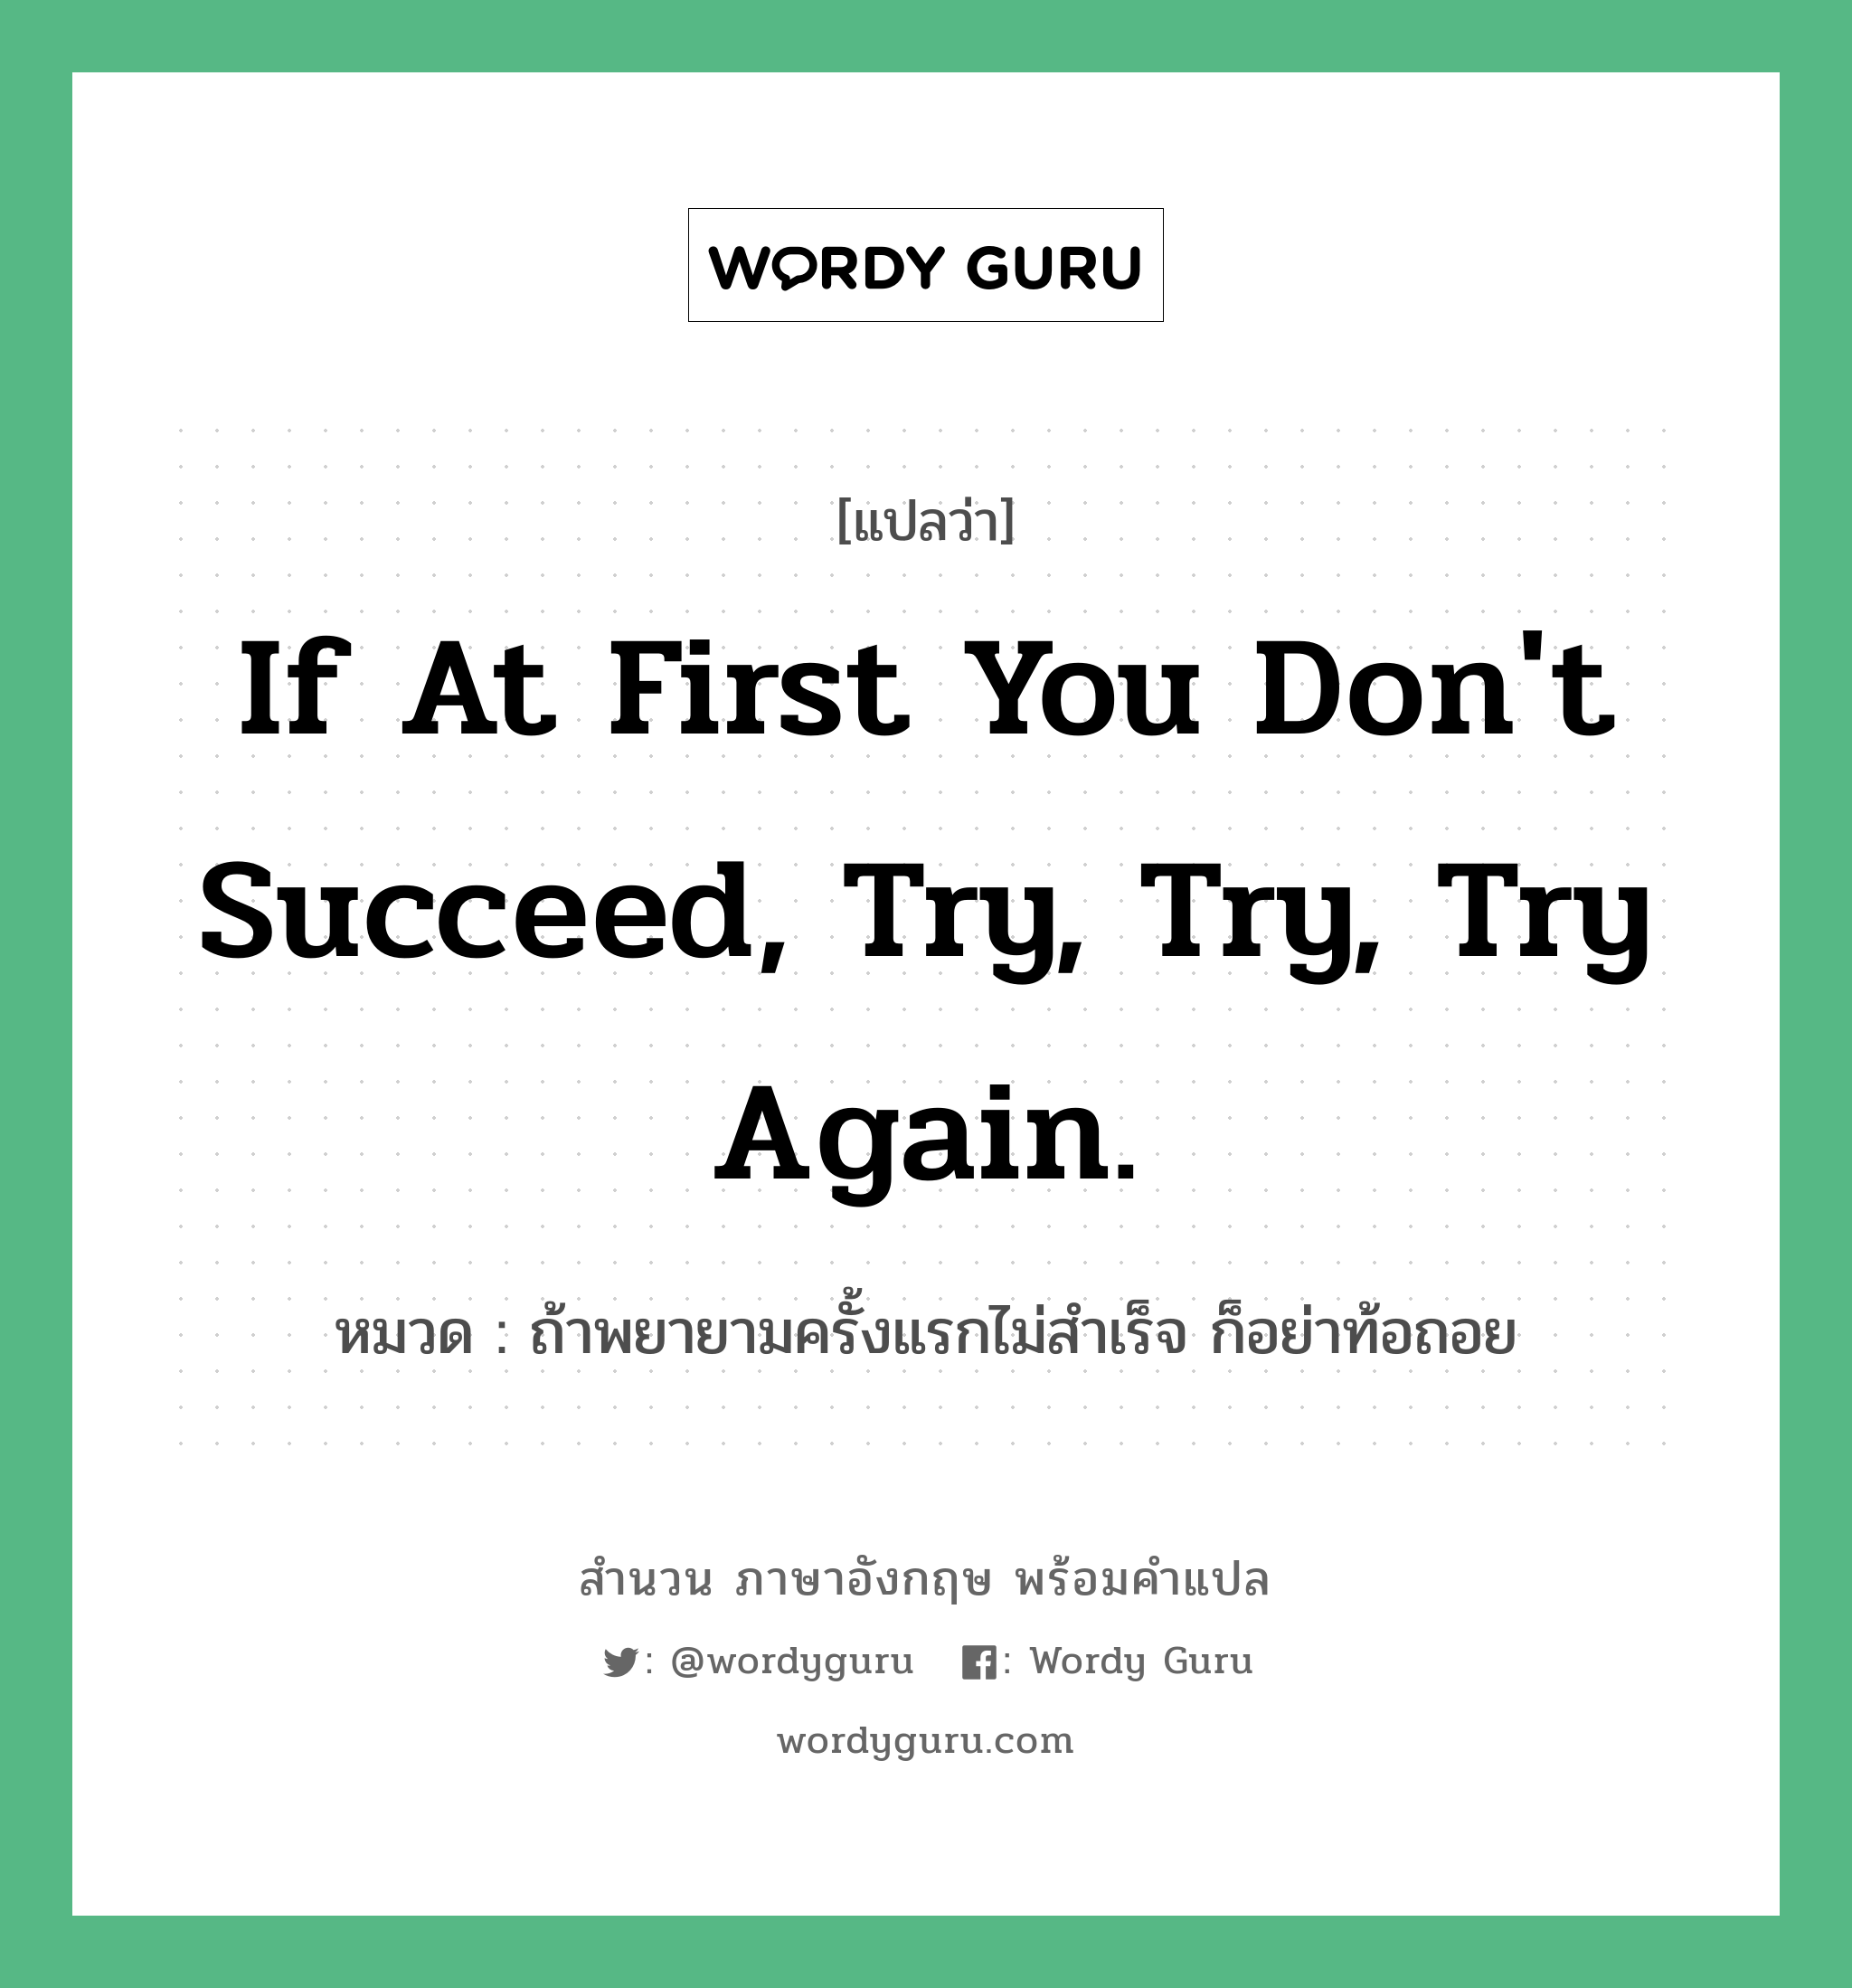 ถ้าพยายามครั้งแรกไม่สำเร็จ ก็อย่าท้อถอย ภาษาอังกฤษ?, สำนวนภาษาอังกฤษ ถ้าพยายามครั้งแรกไม่สำเร็จ ก็อย่าท้อถอย แปลว่า ถ้าพยายามครั้งแรกไม่สำเร็จ ก็อย่าท้อถอย หมวด If at first you don't succeed, try, try, try again. คำสุภาษิต ภาษาอังกฤษ หมวด คำสุภาษิต ภาษาอังกฤษ